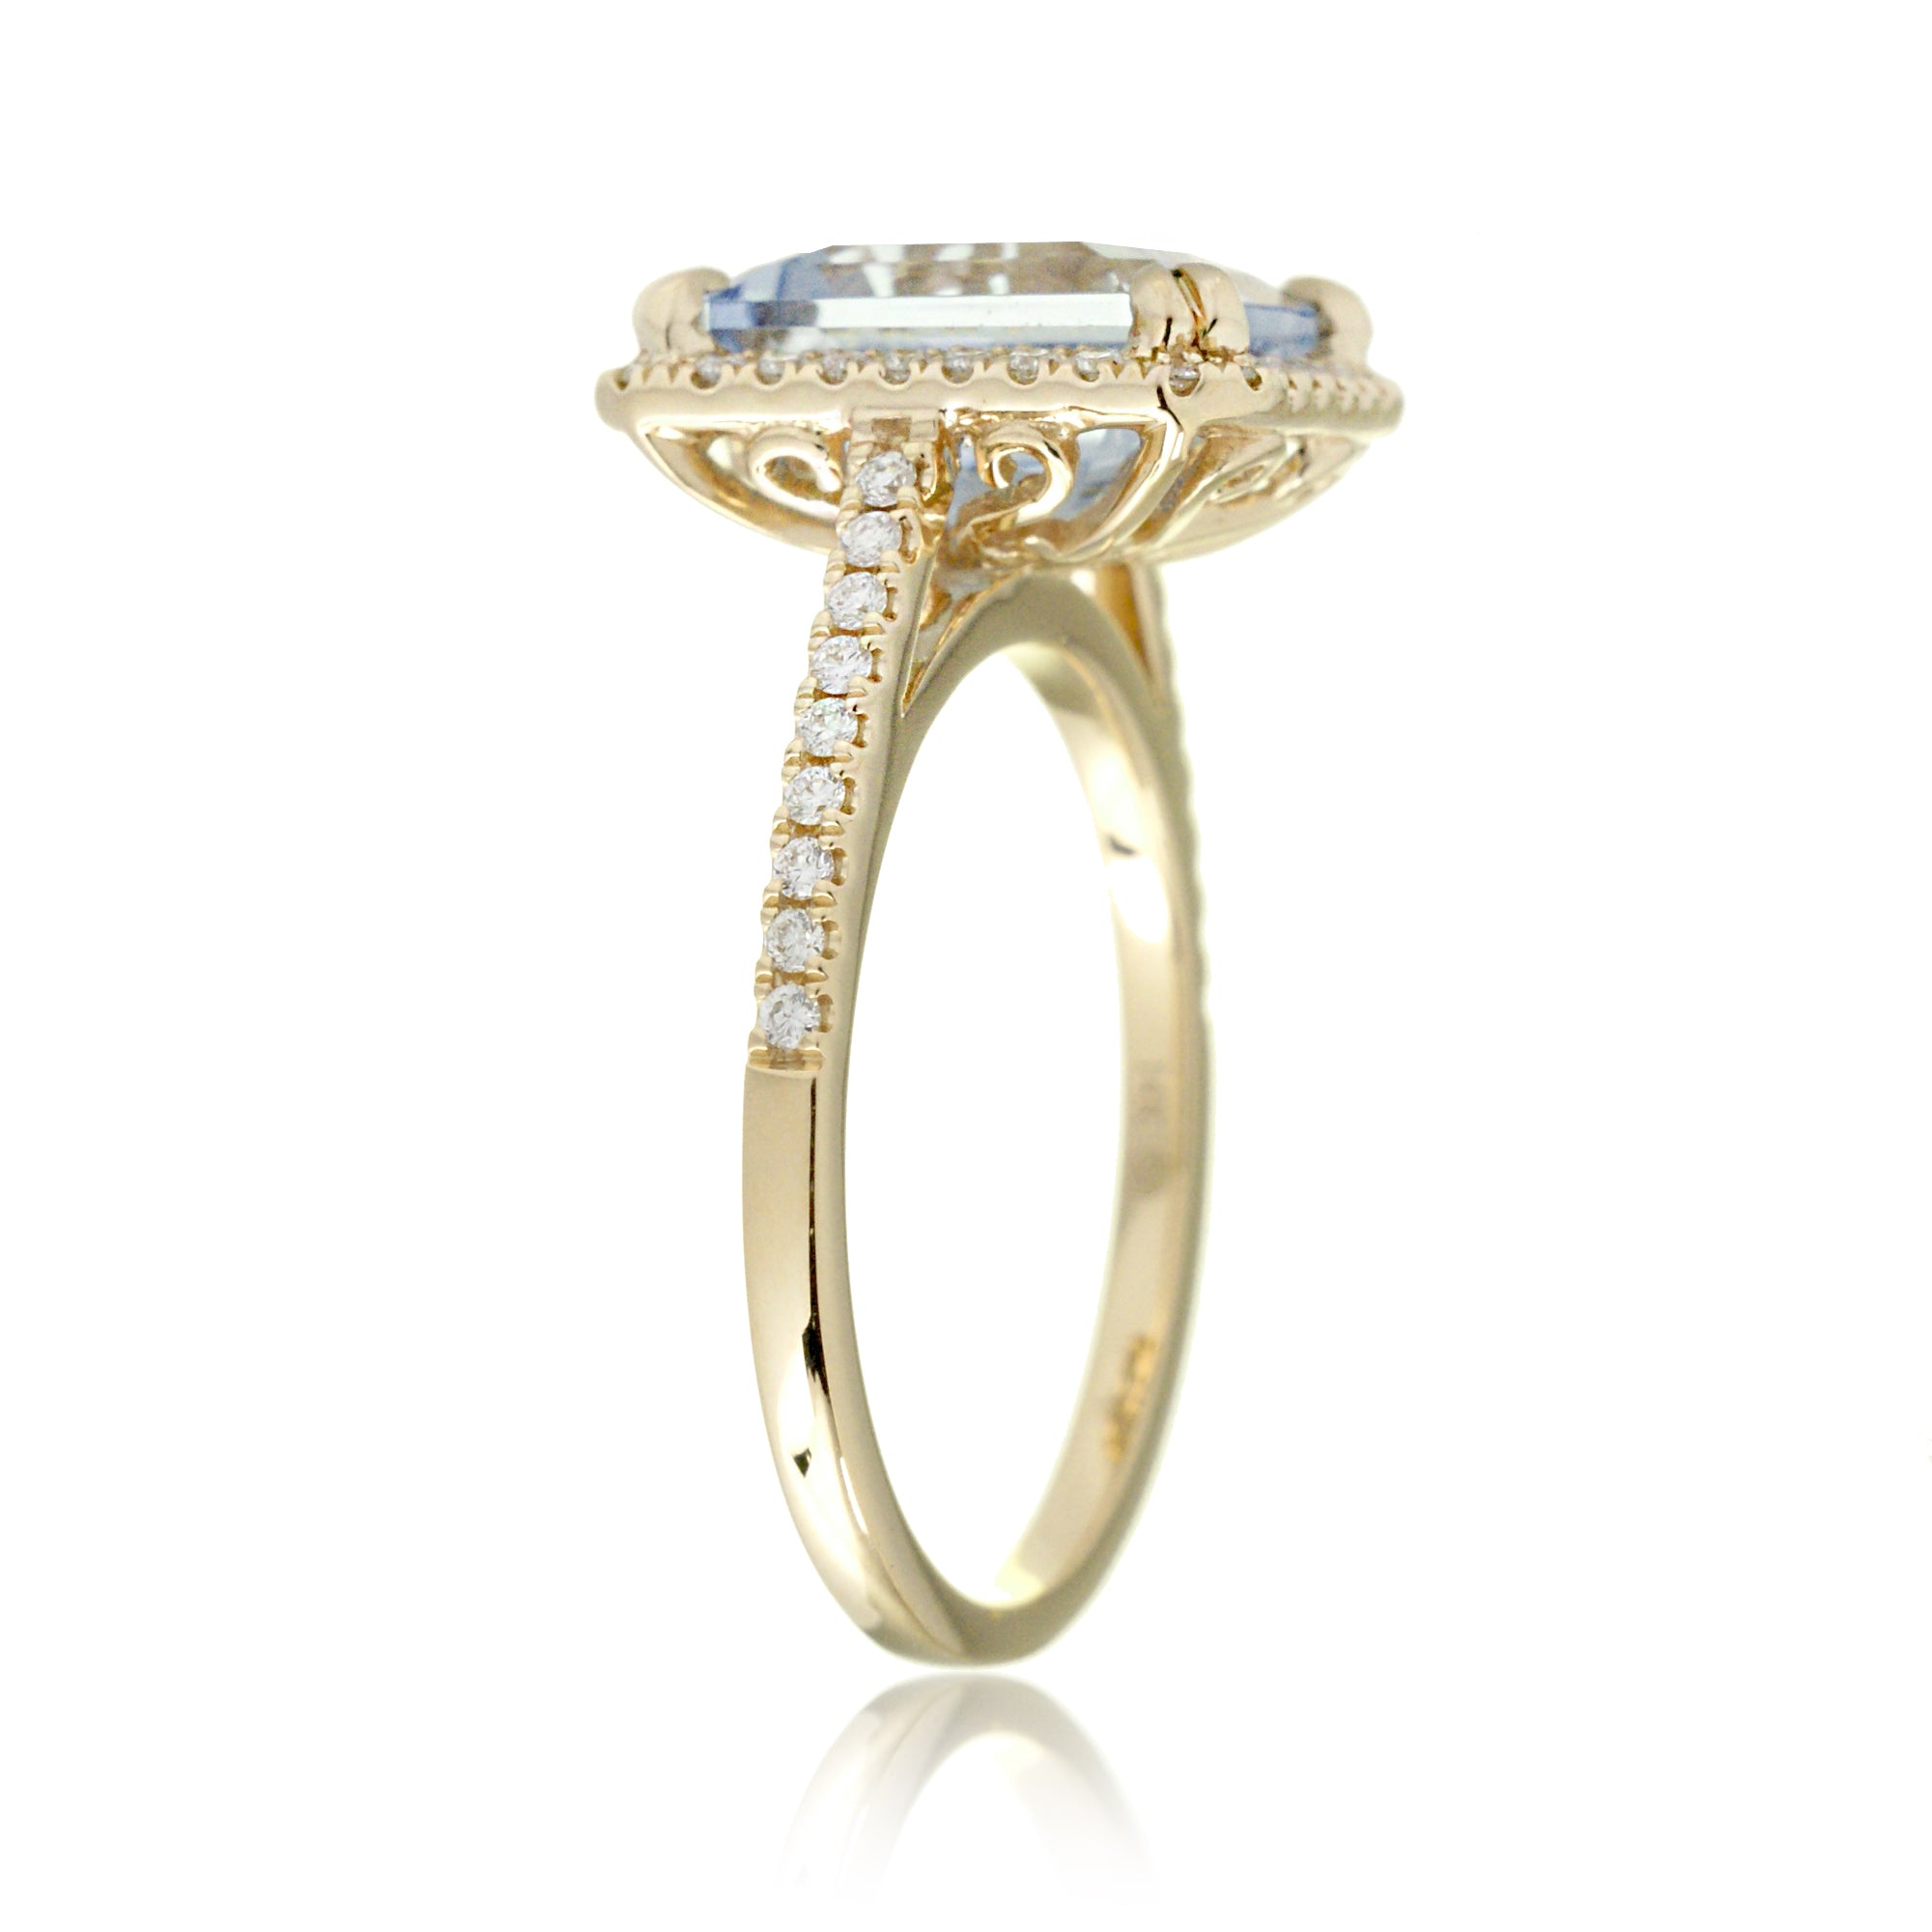 The Signature Emerald Cut Aquamarine Ring